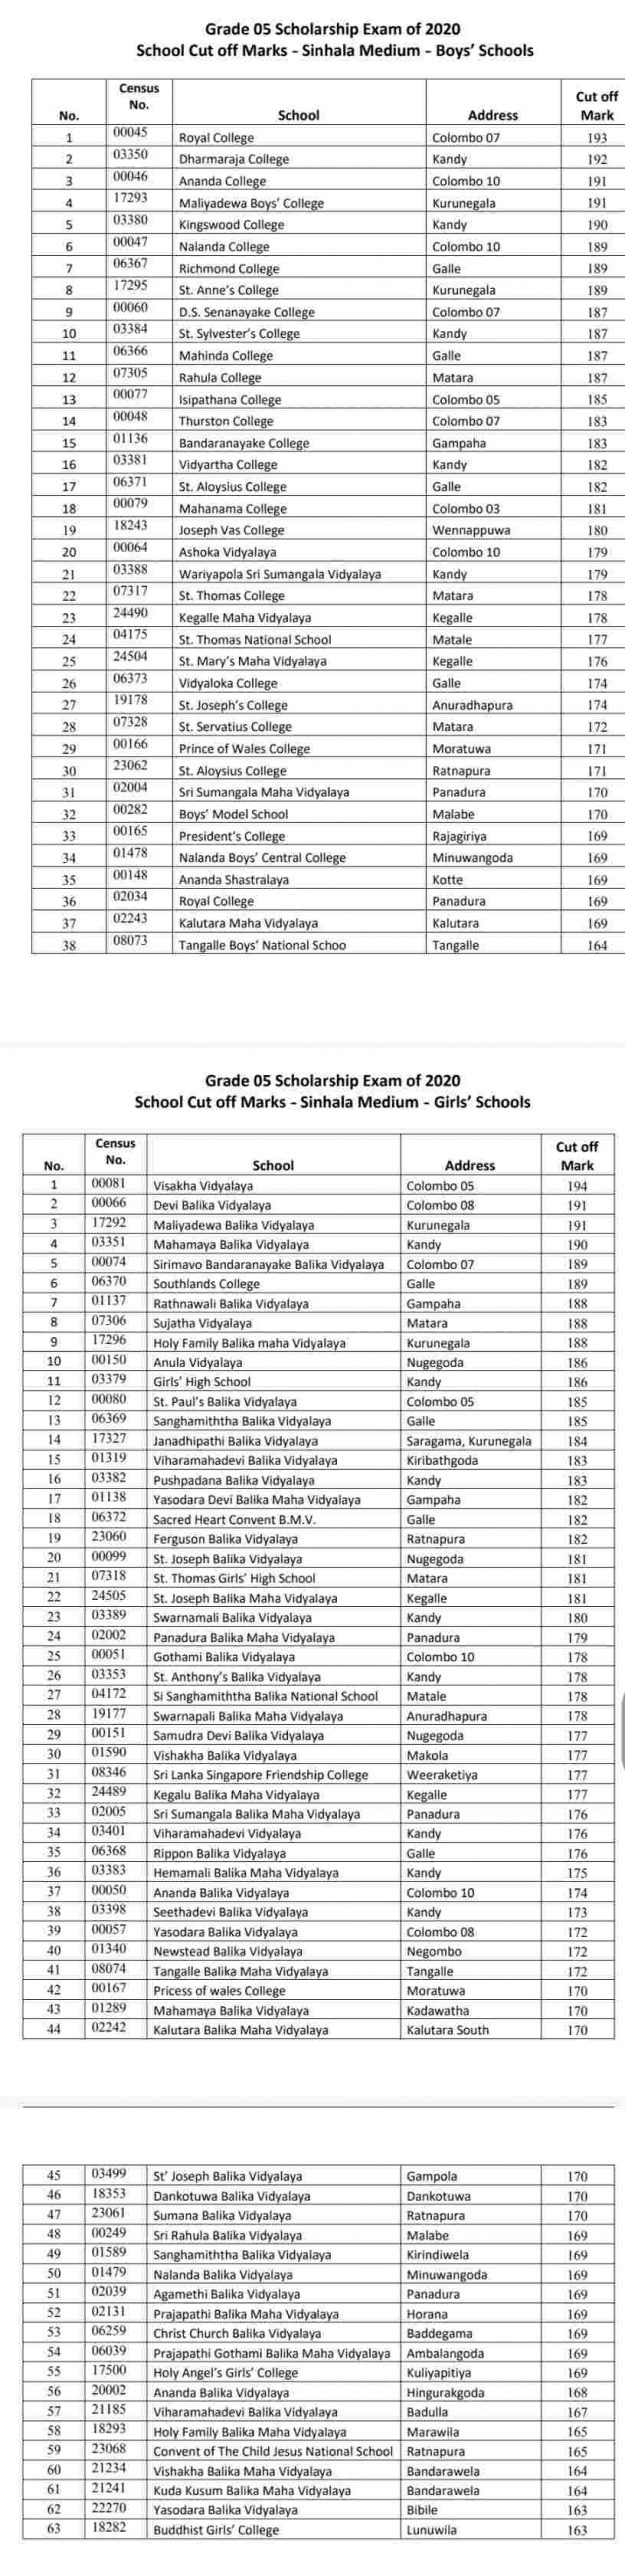 Grade 5 Scholarship School cut off Marks for Grade 6 Sinhala Medium - 2021